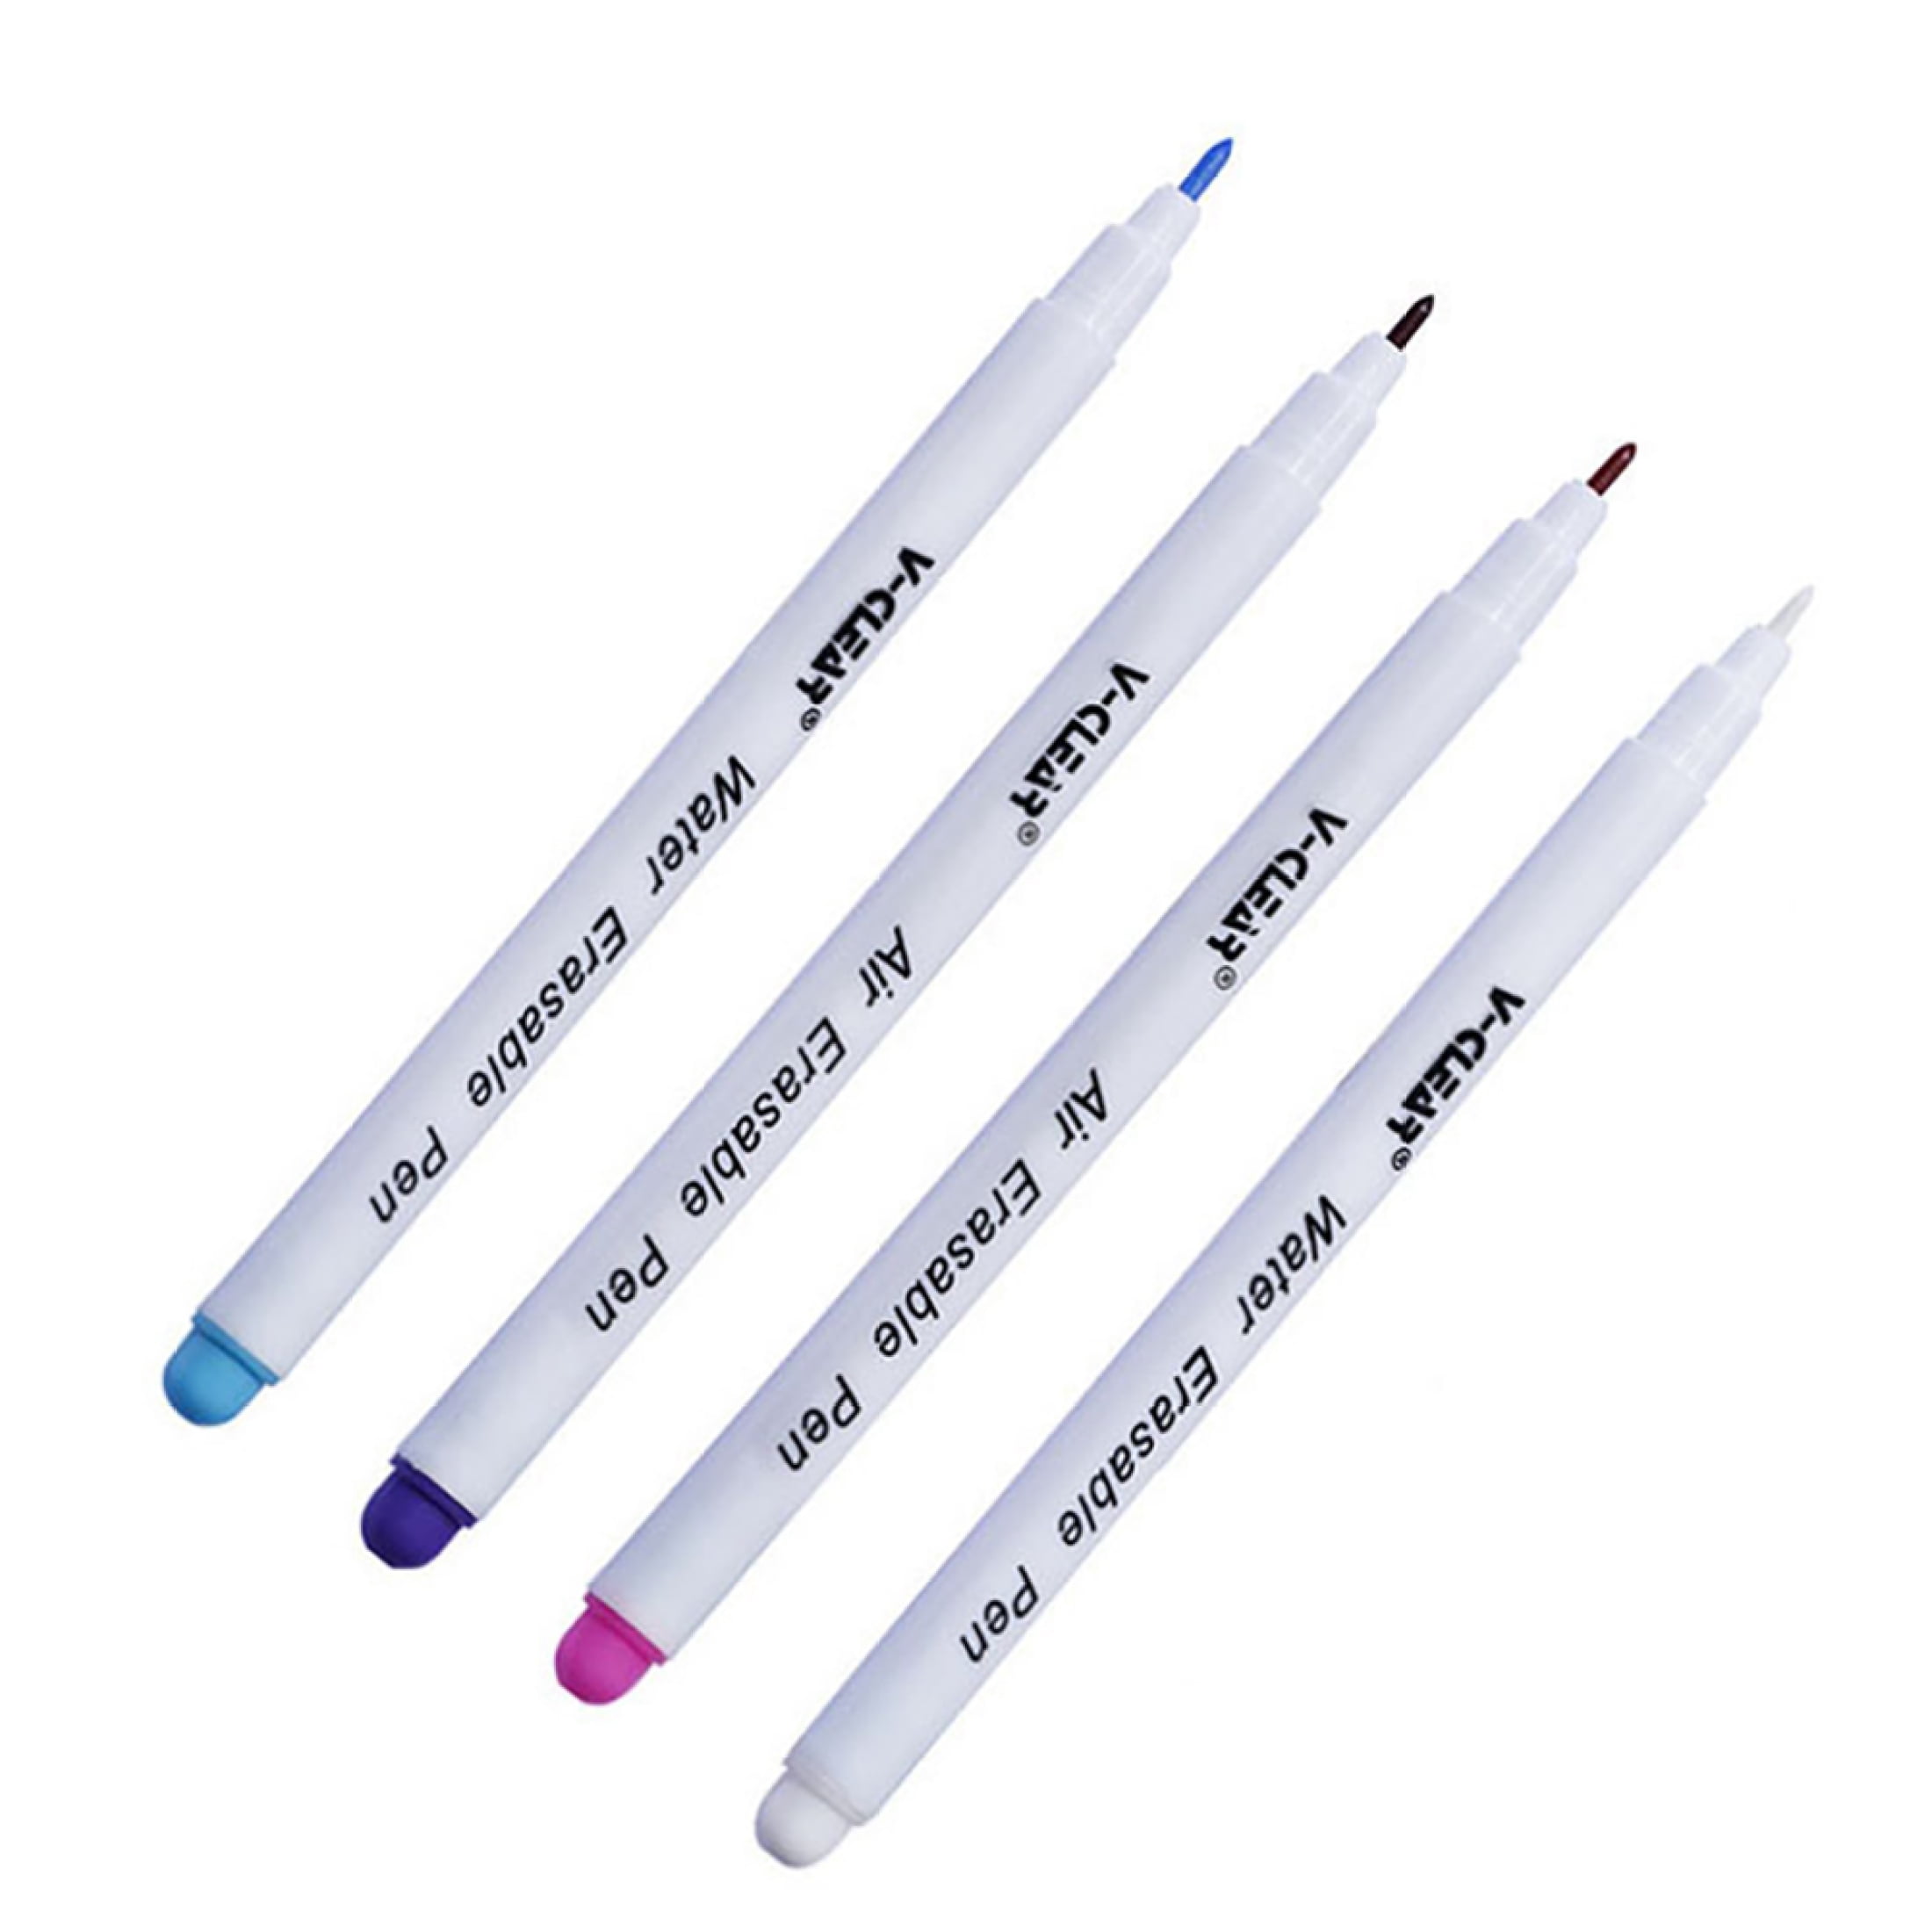 SYGA 8 Piece Air Erasable Pen, Water Erasable Fabric Marking Pens